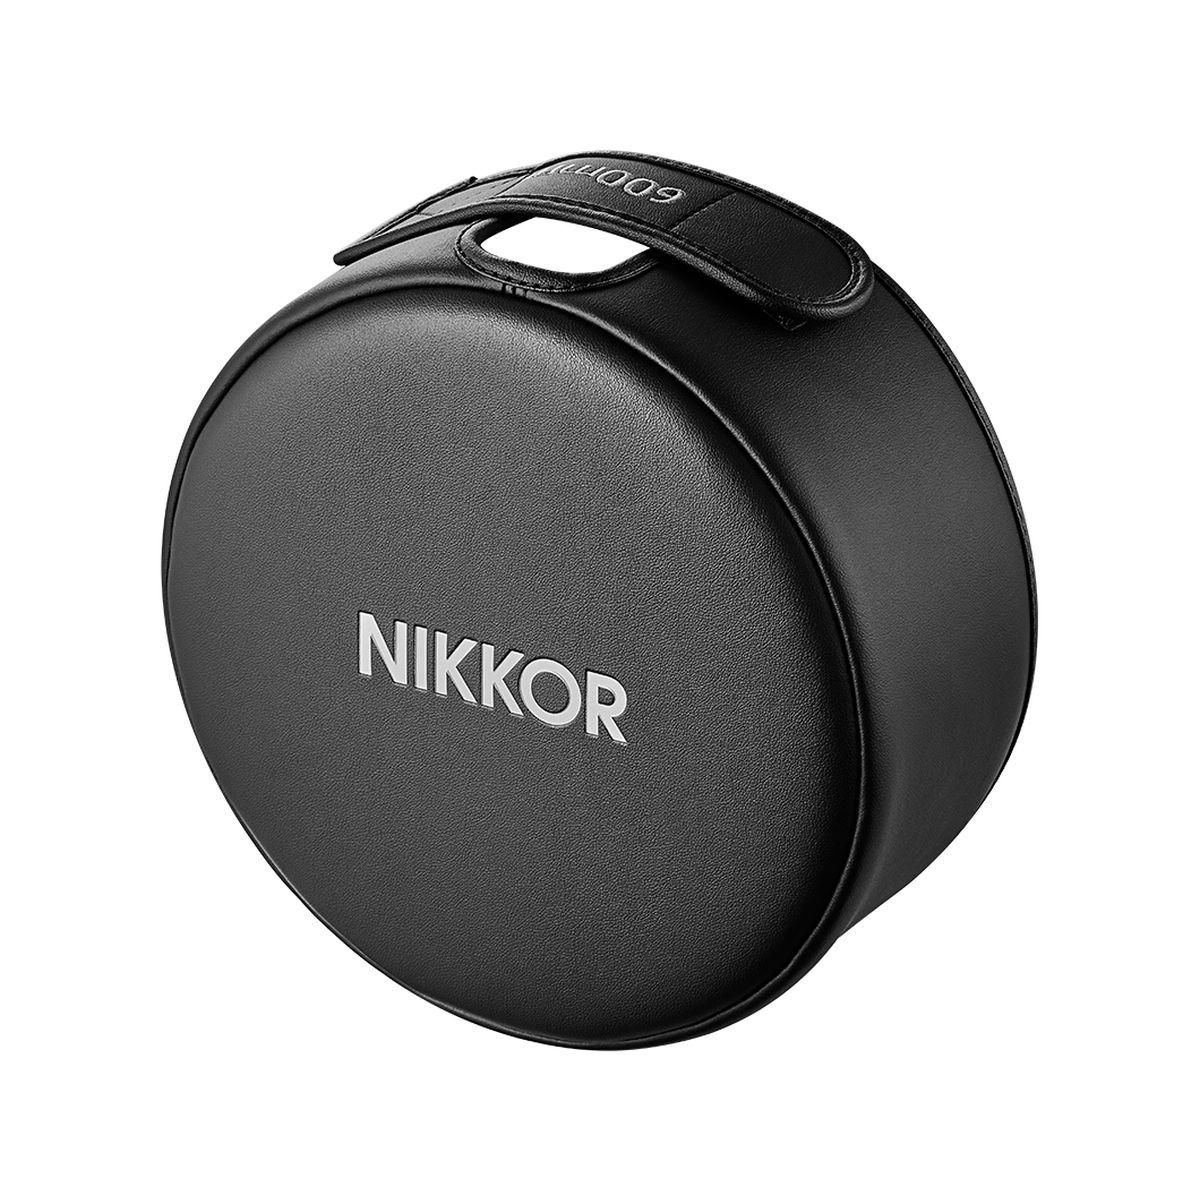 Nikon Nikkor Z 600 mm 1:4 TC VR S